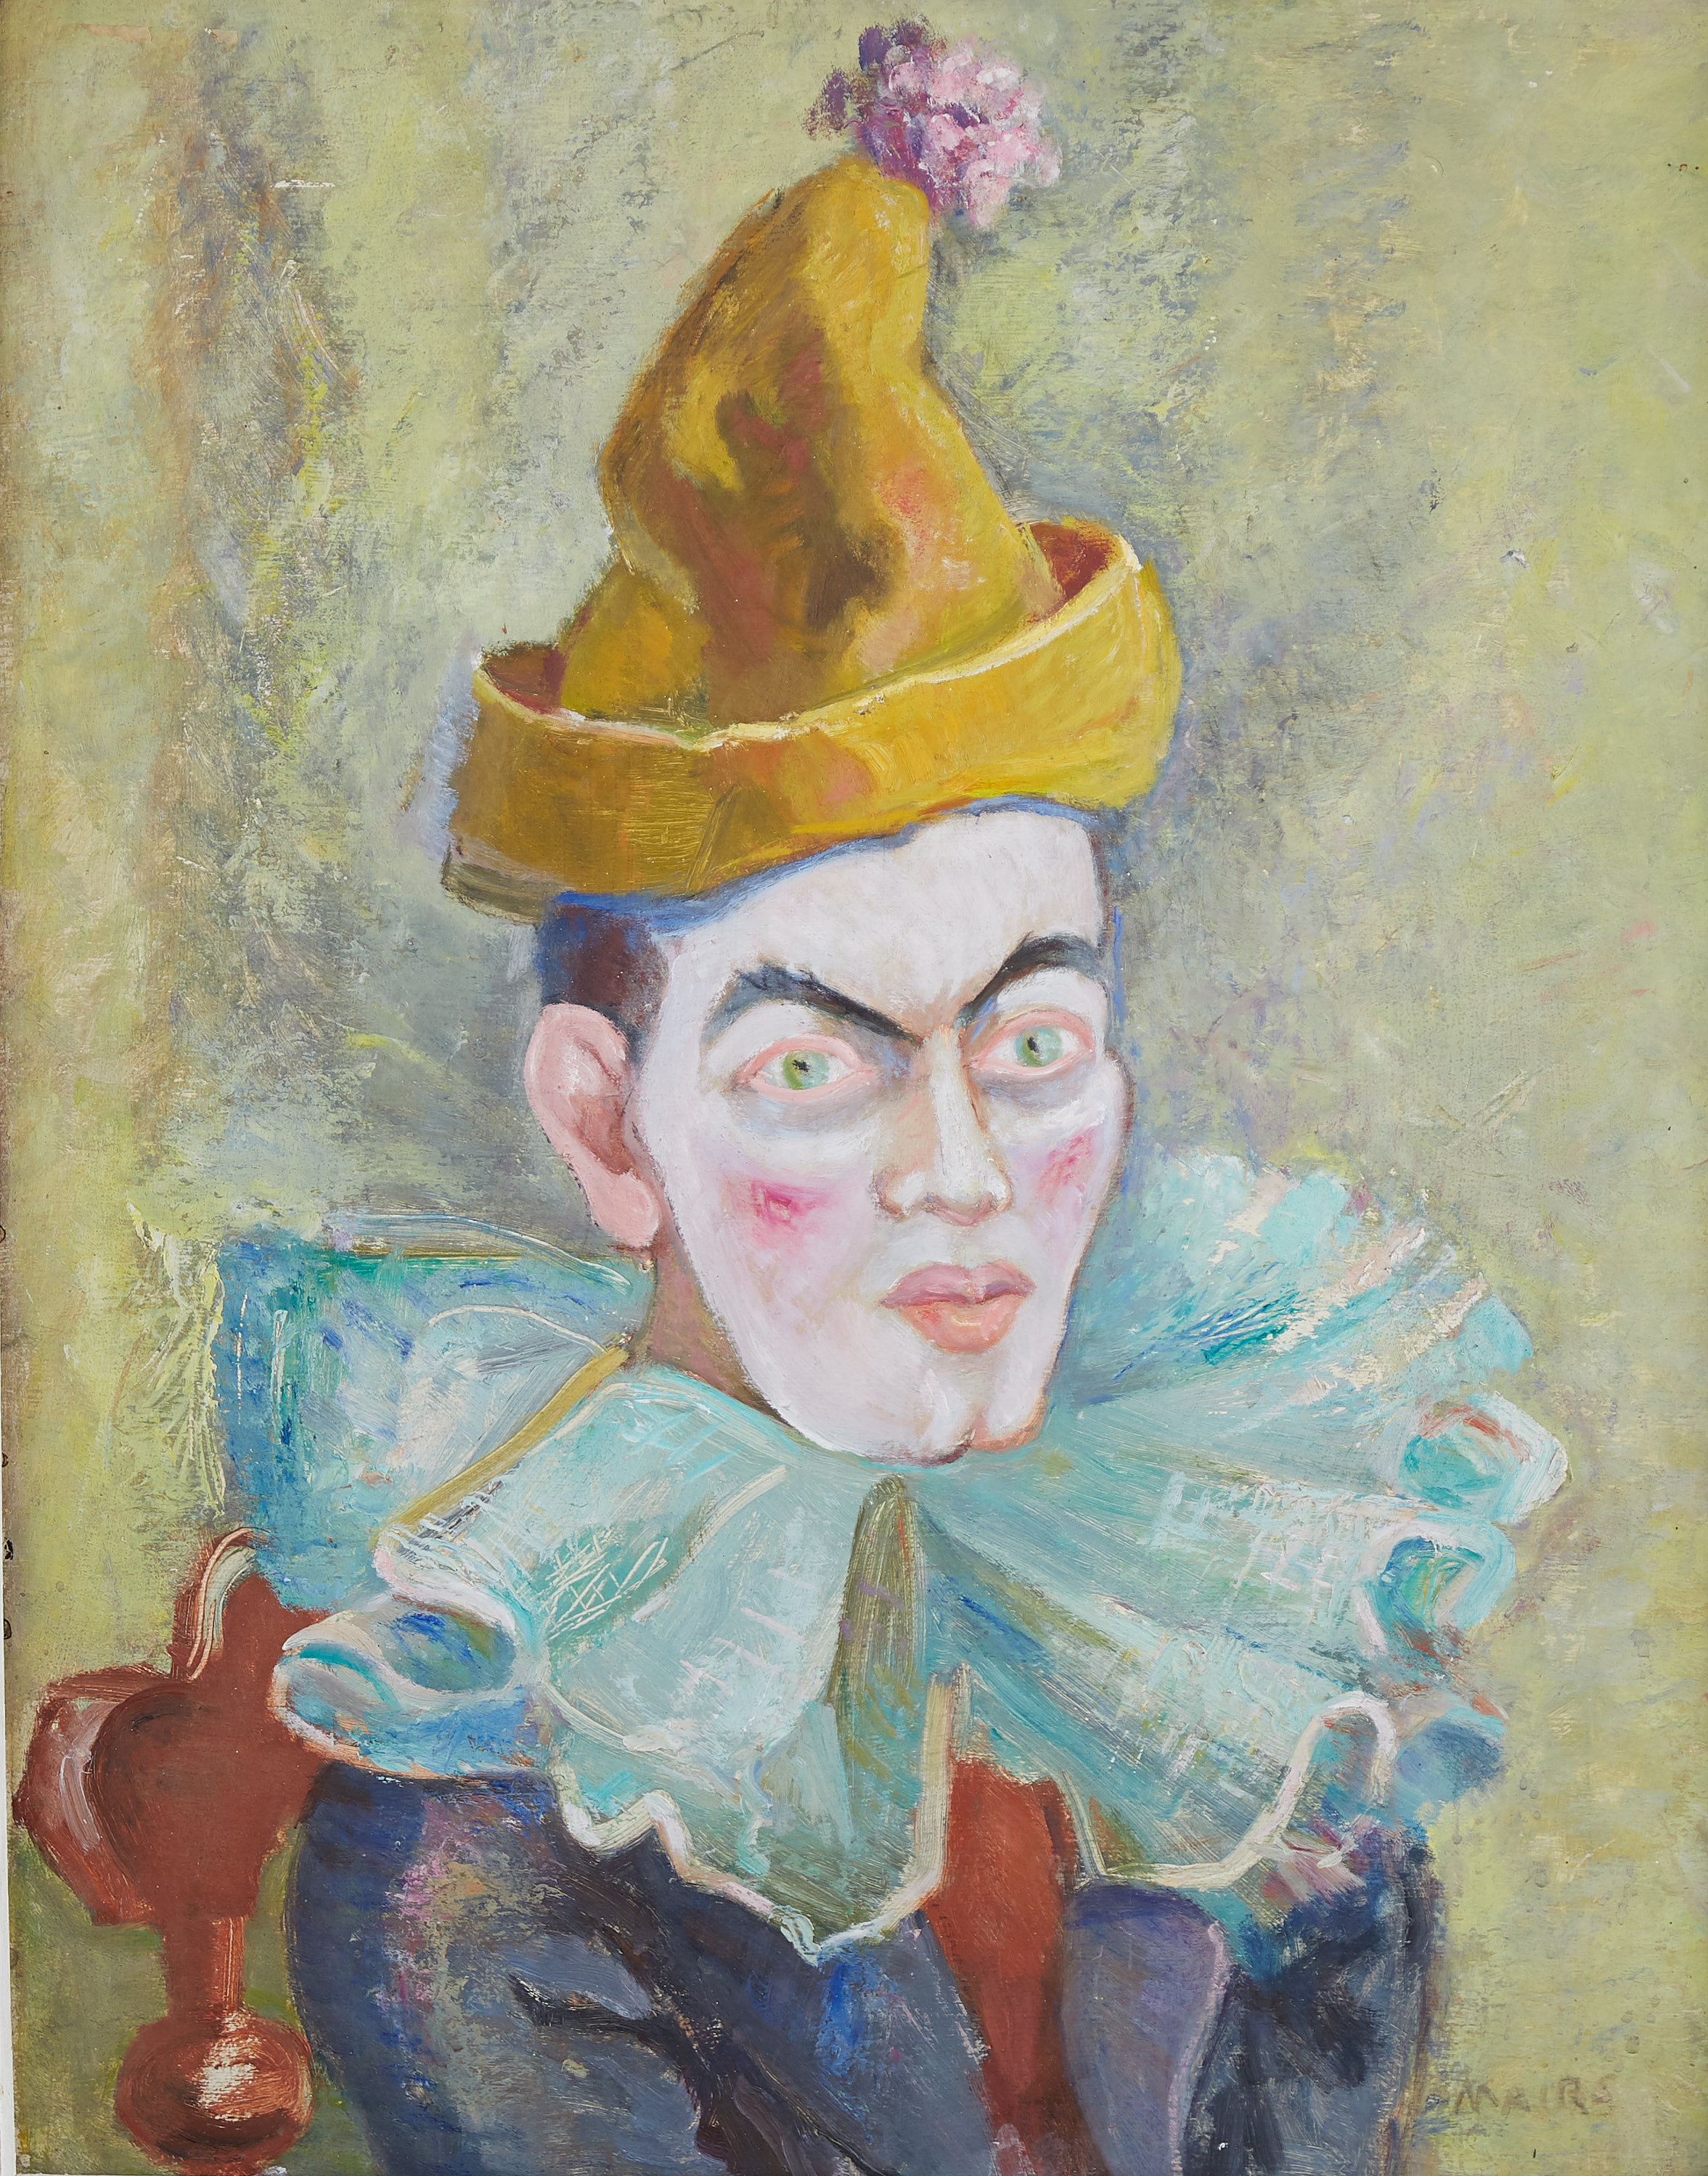 Lot 071: Clara Mairs Clown Portrait Oil on Board